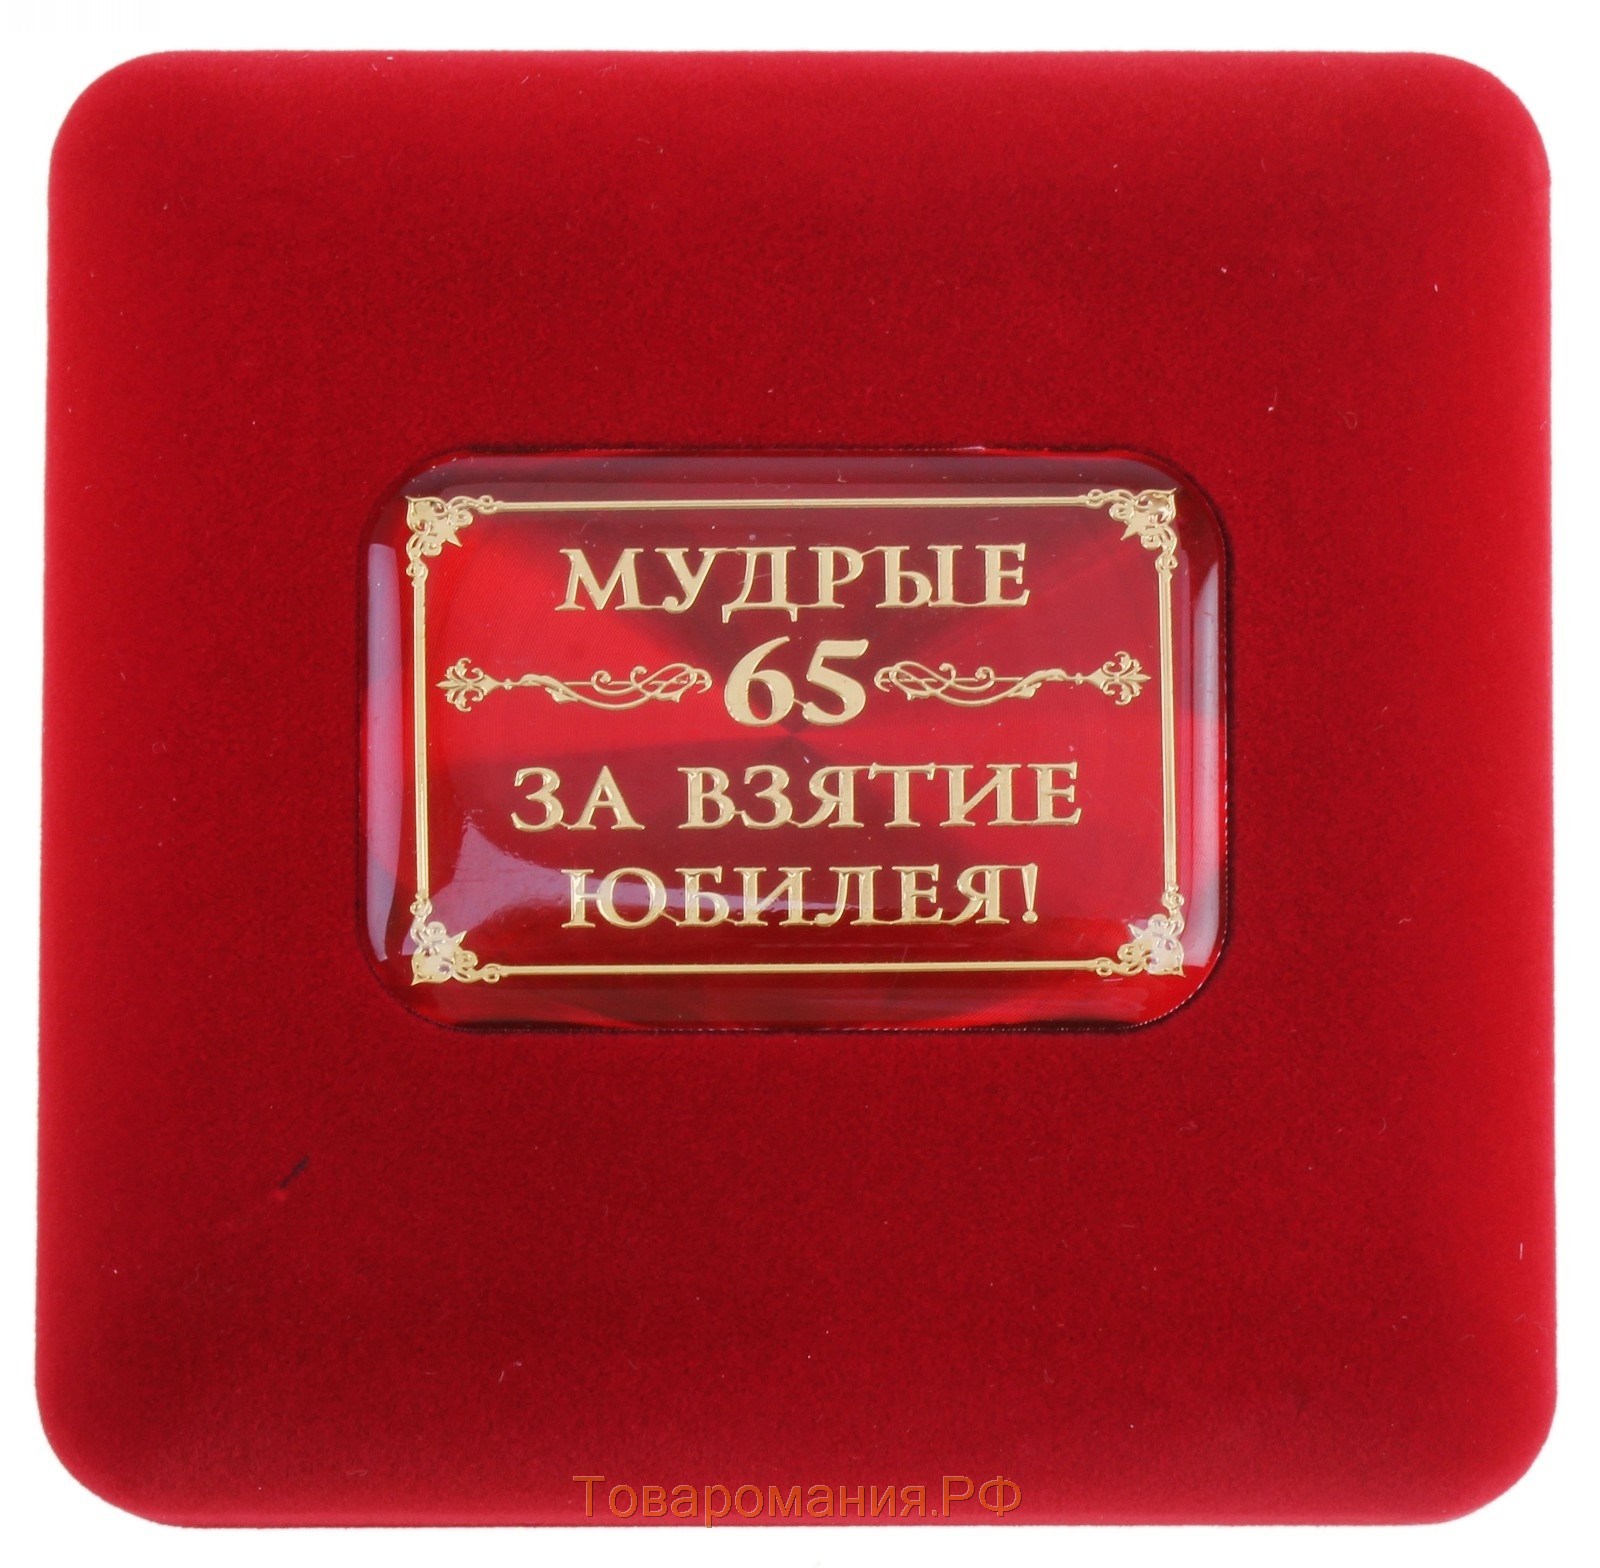 Медаль в бархатной коробке "65 лет", диам. 7 см